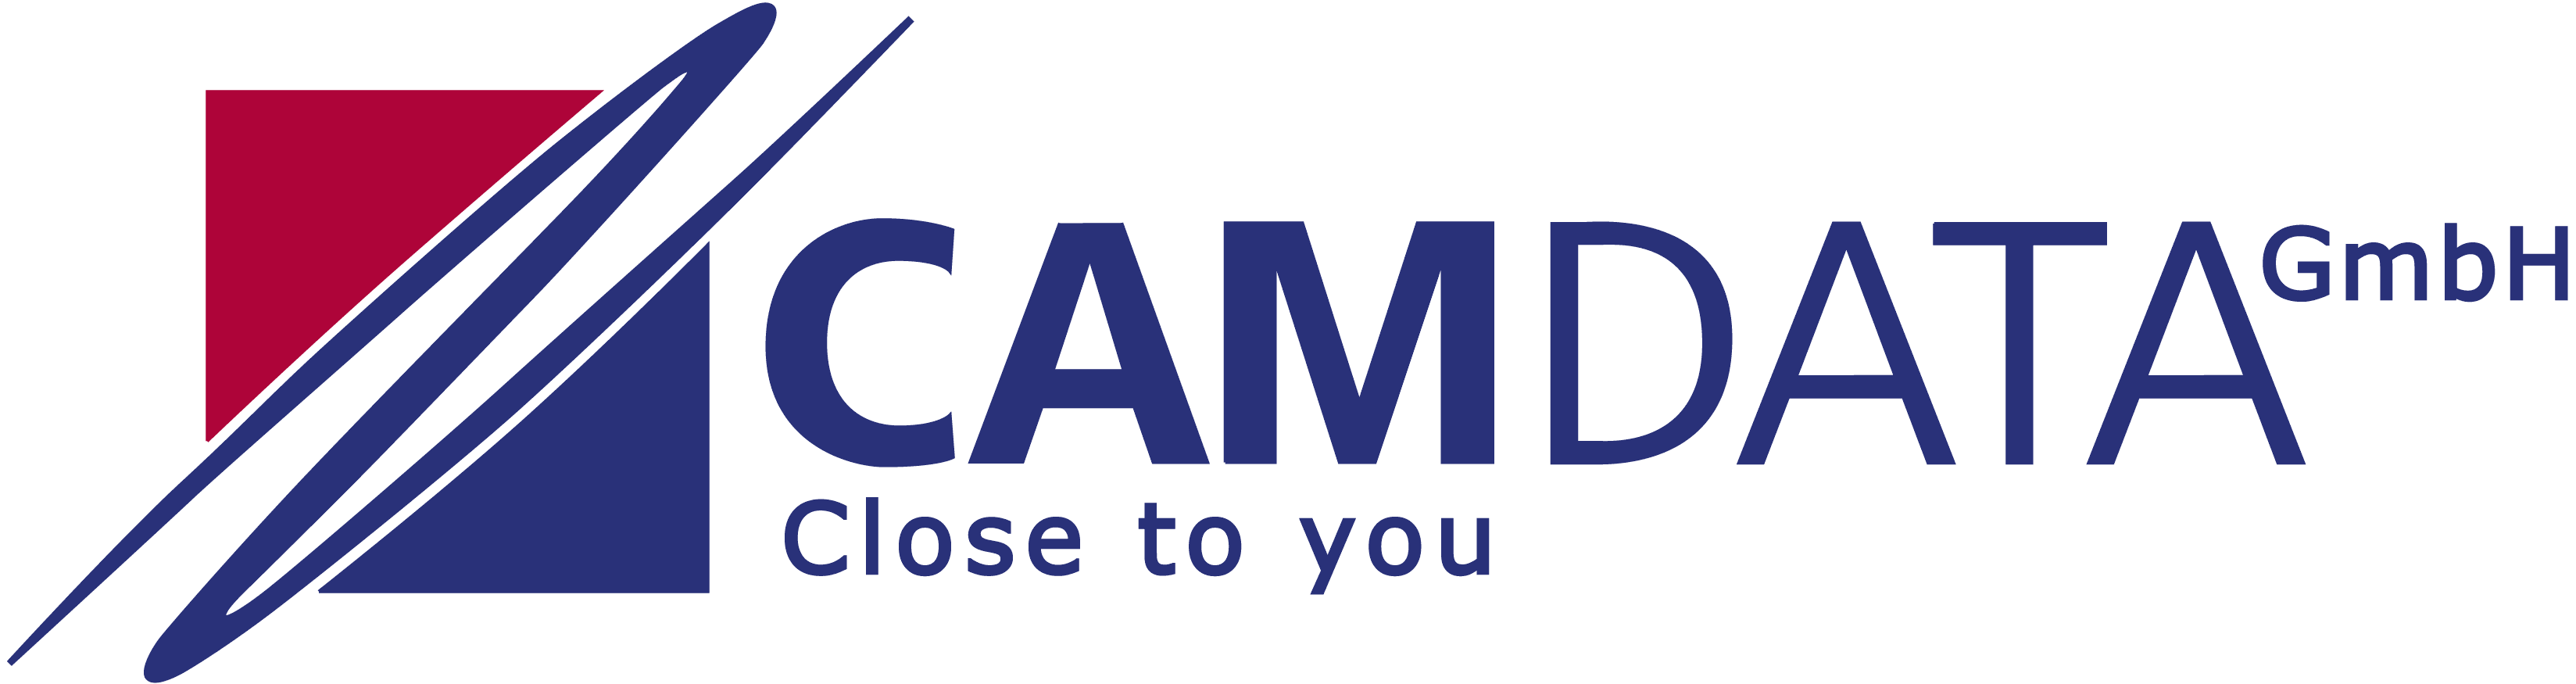 CamData GmbH